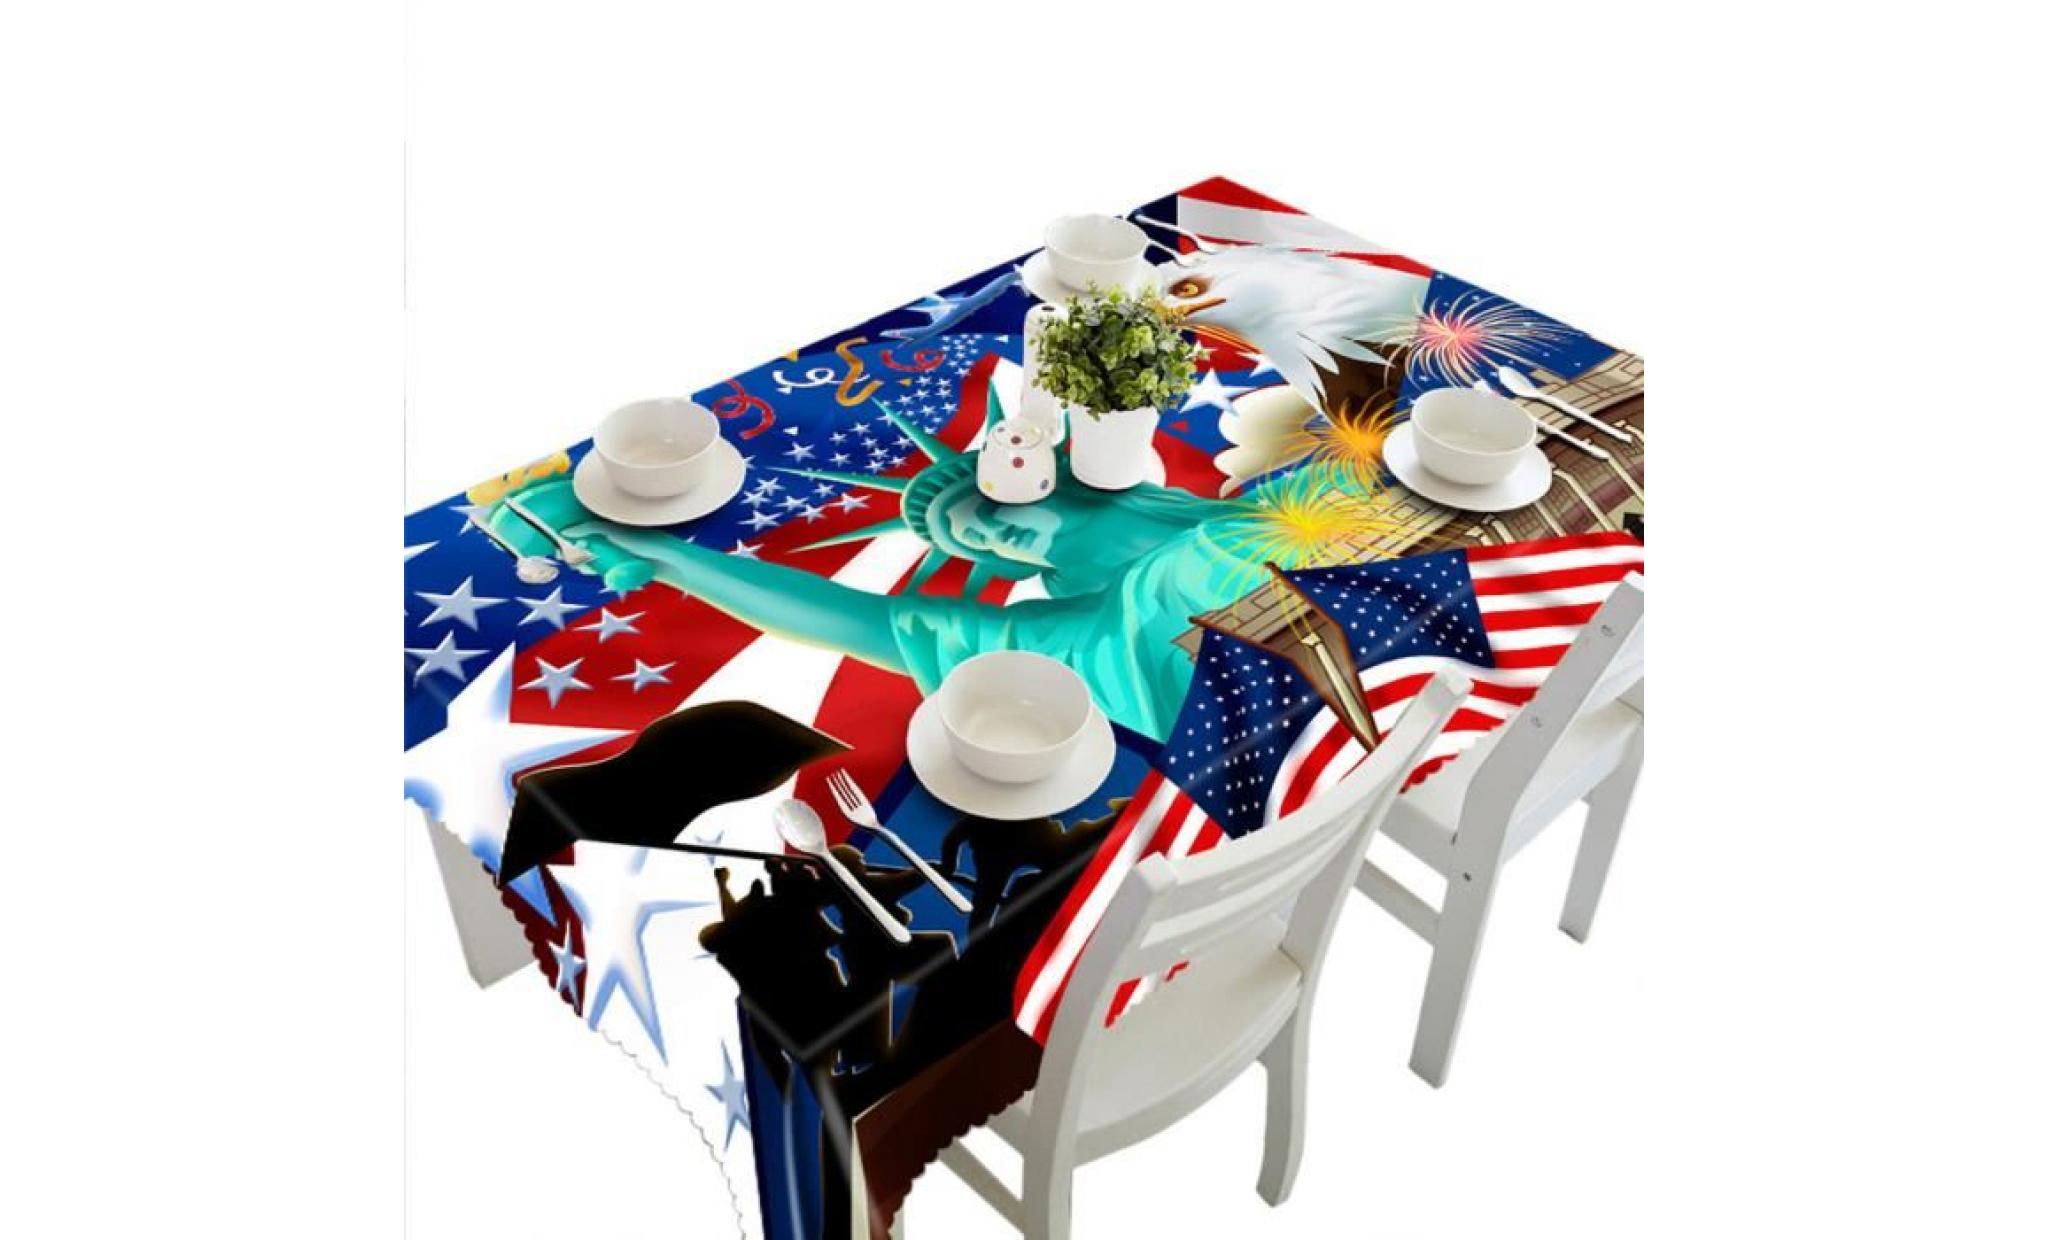 3d multi table à manger fonctionnelle tissu pour picnic party i nappe_cxx491